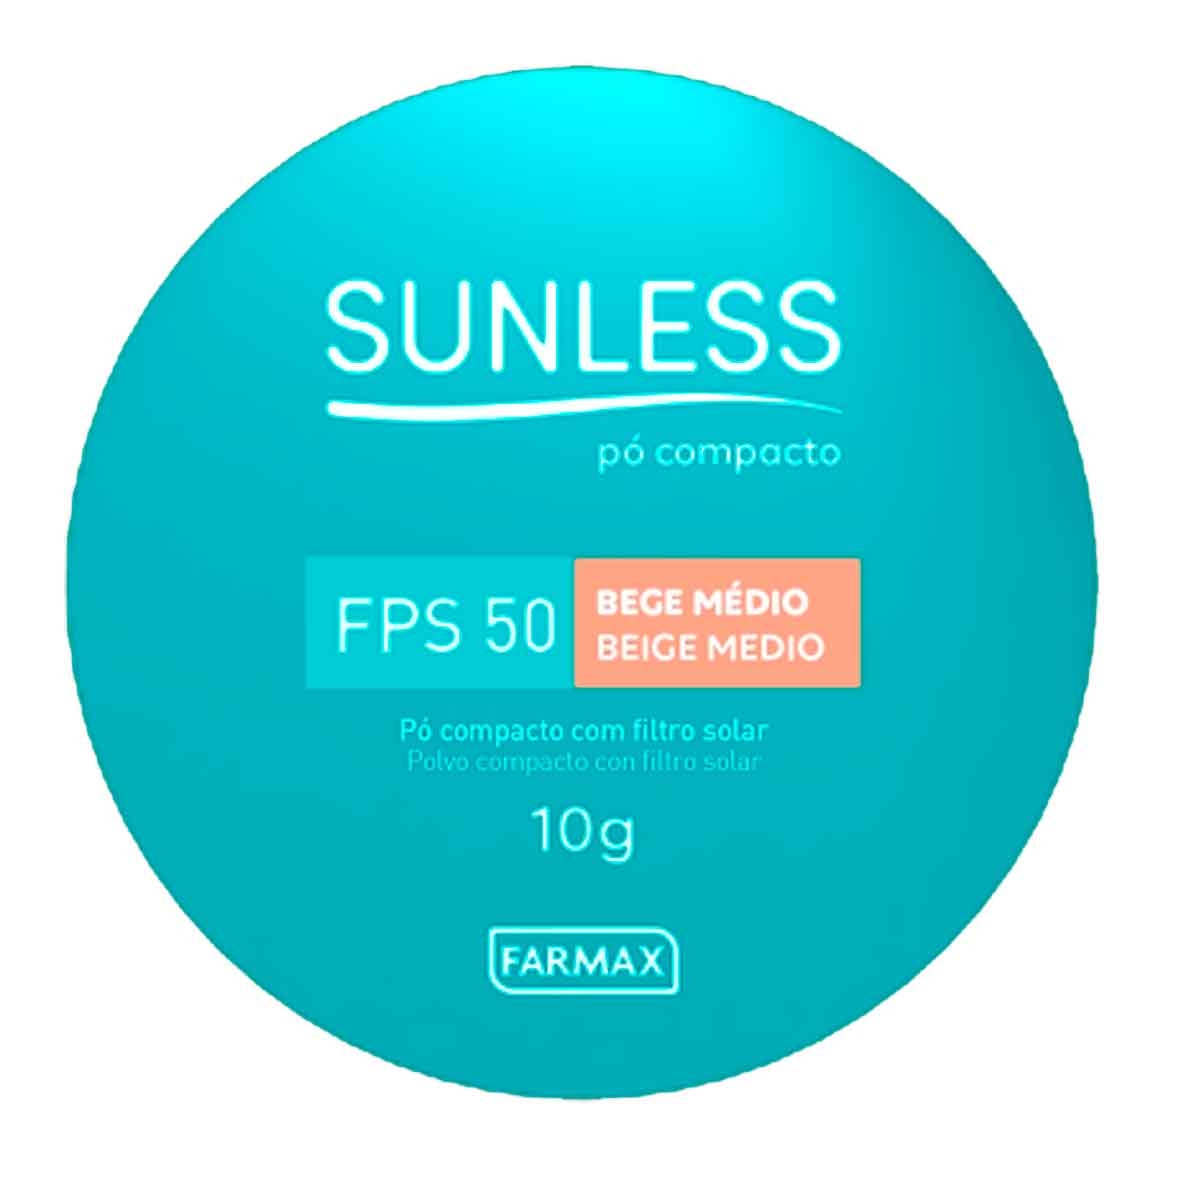 Pó Compacto Sunless Bege Médio FPS50 com 10g 10g